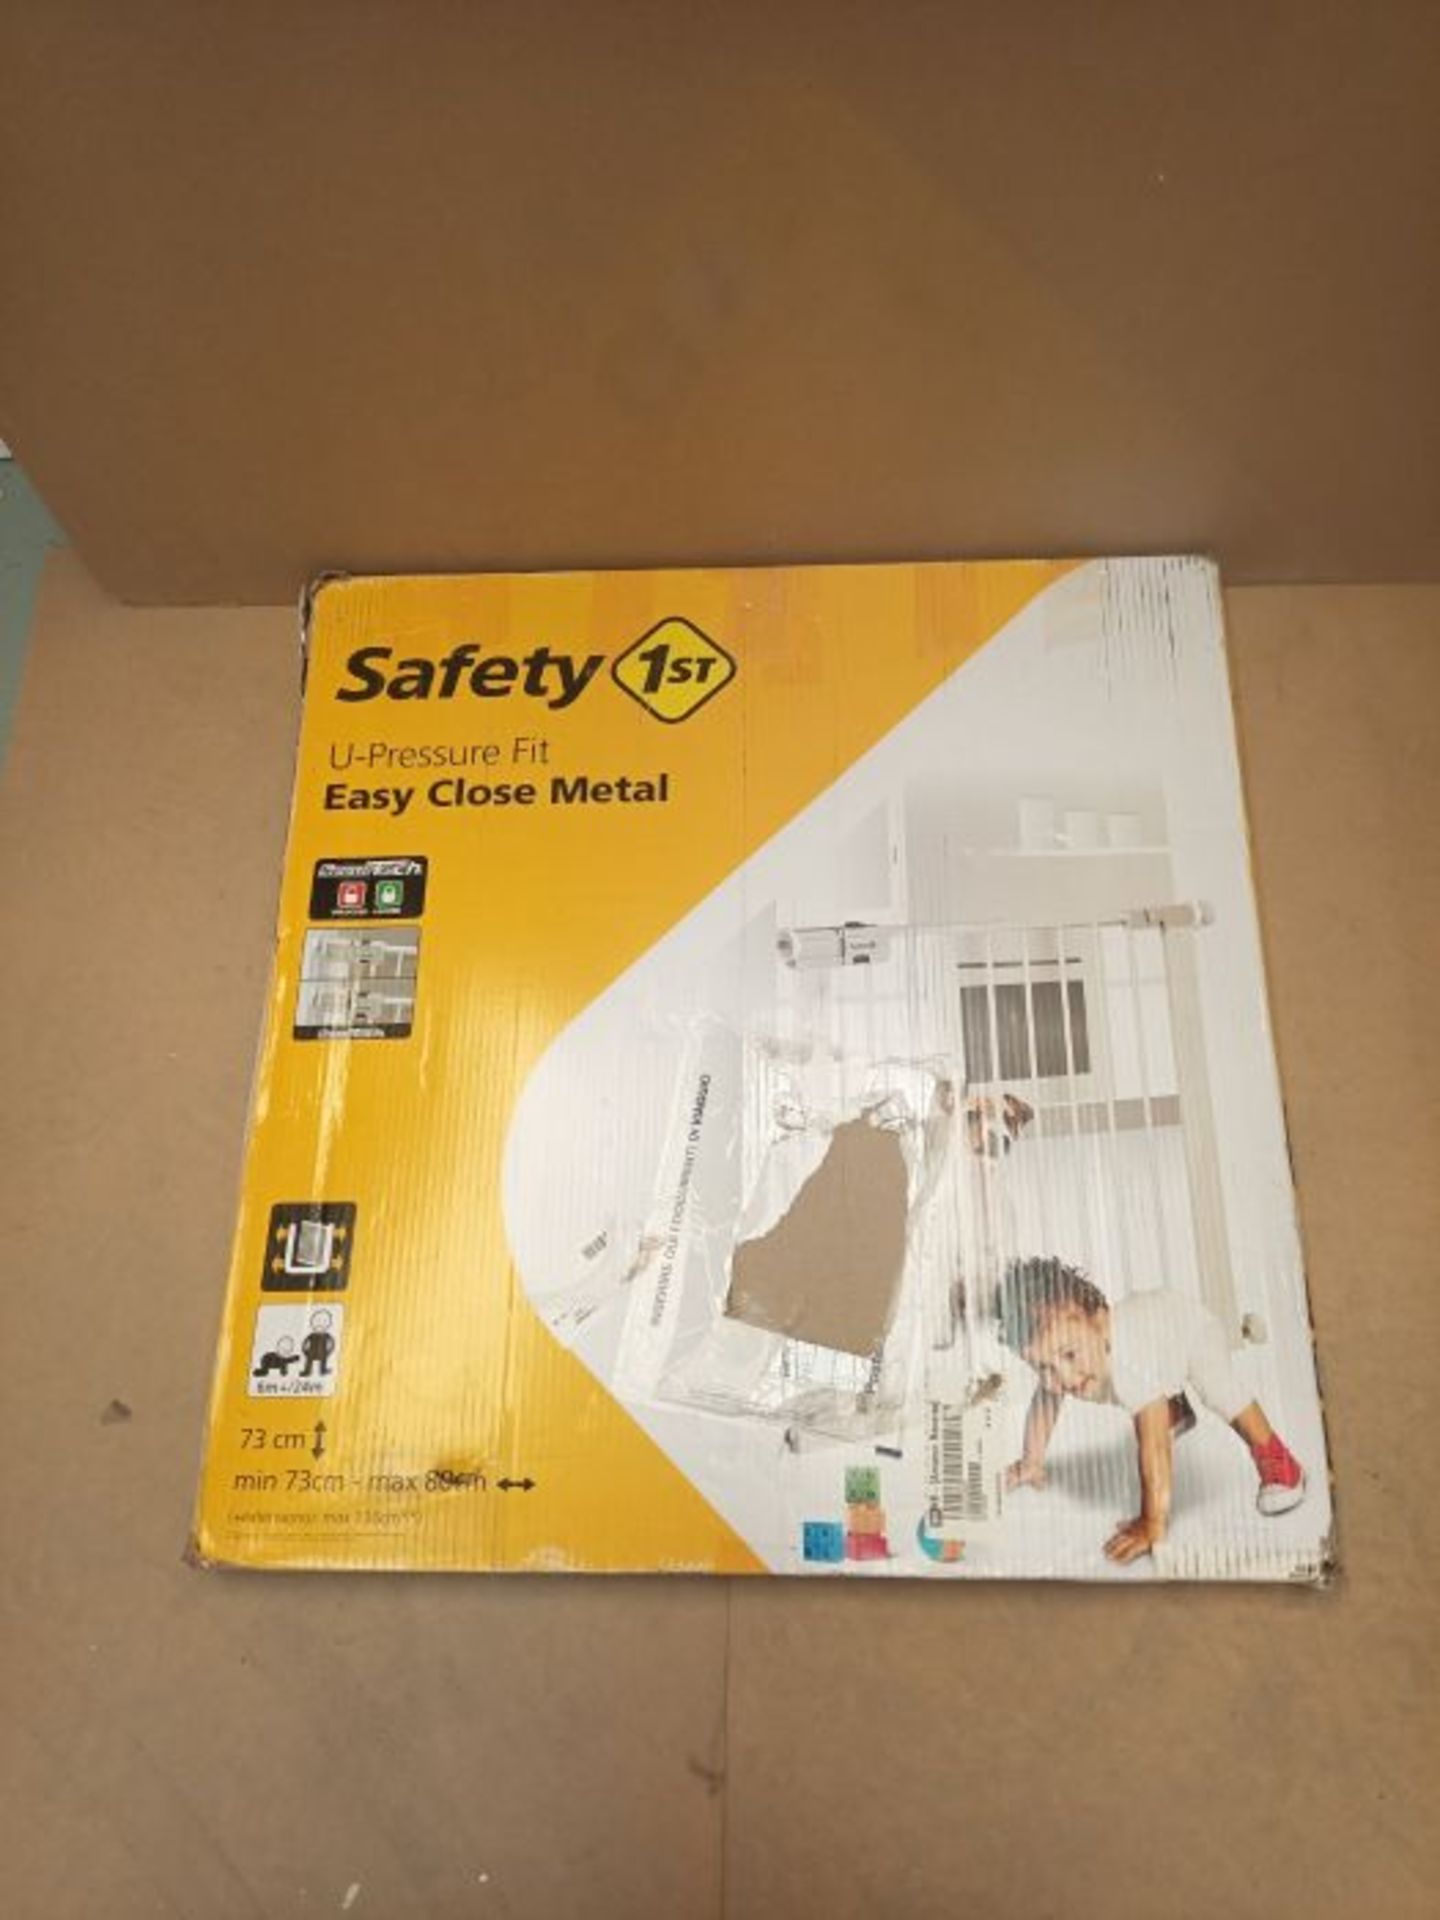 Safety 1st Easy Close Metal Cancelletto di Sicurezza per Bambini, Cani, per Aperture d - Image 2 of 3